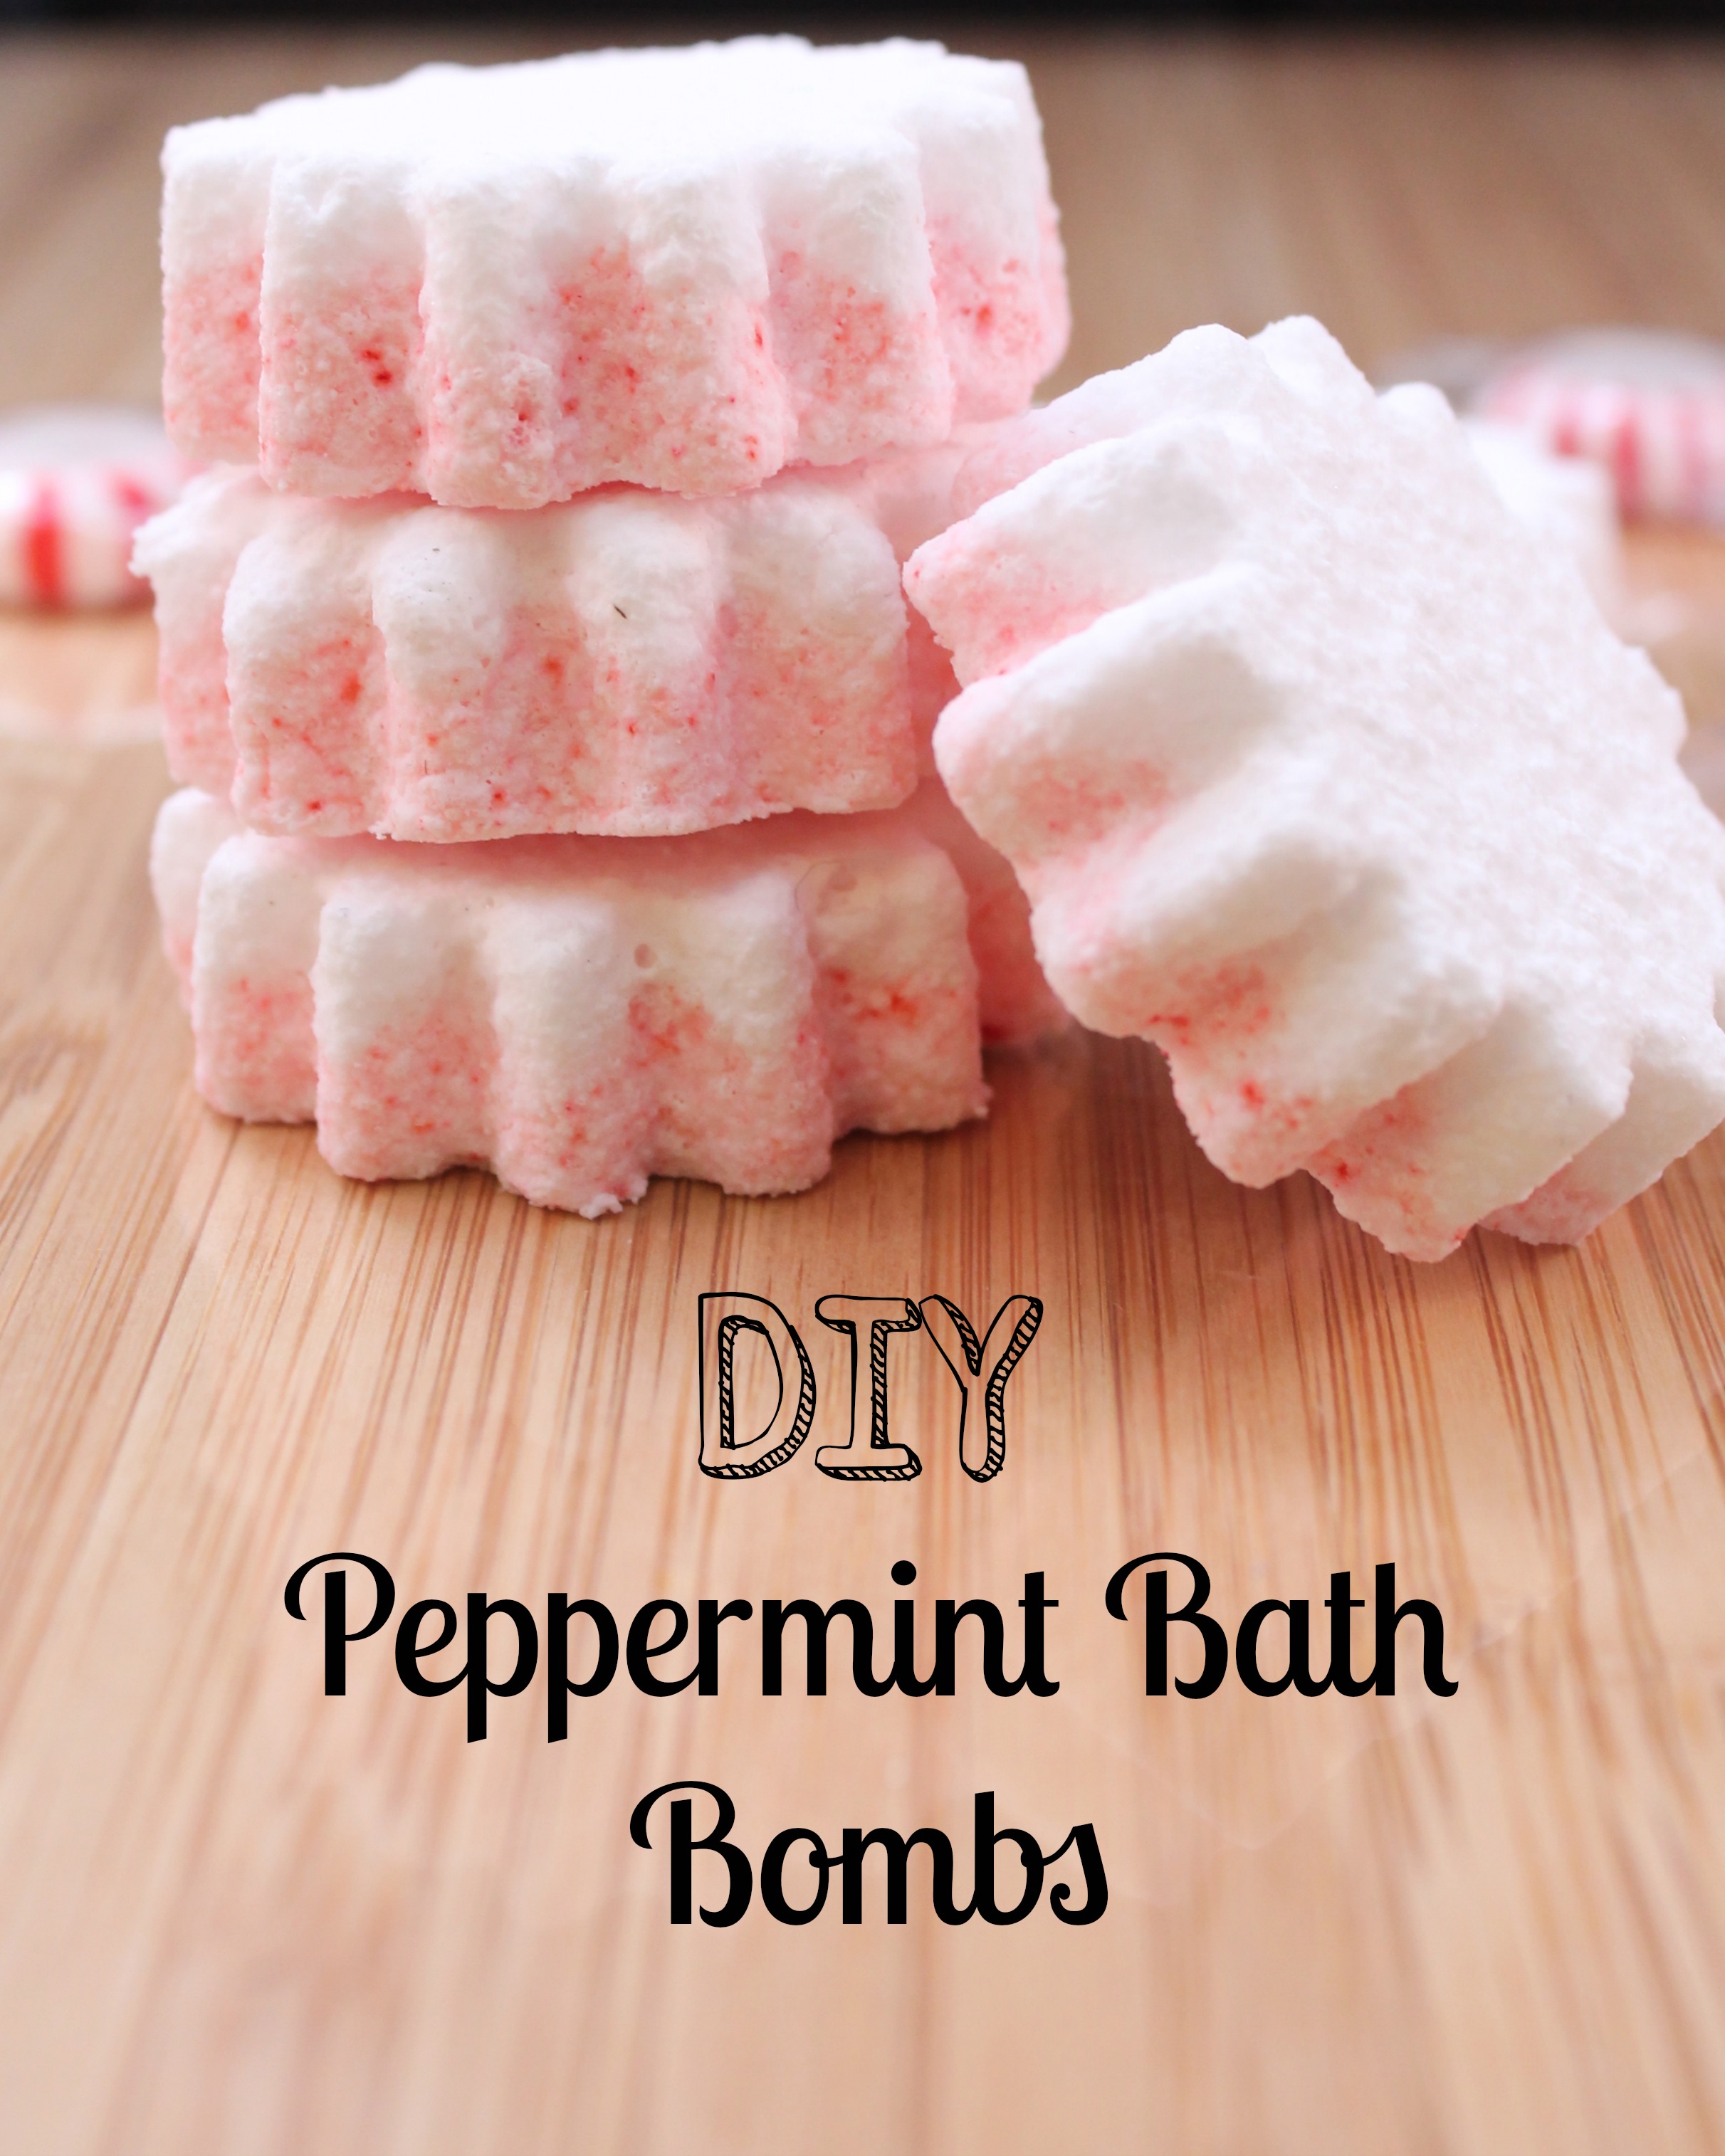 Diy peppermint bath bombs